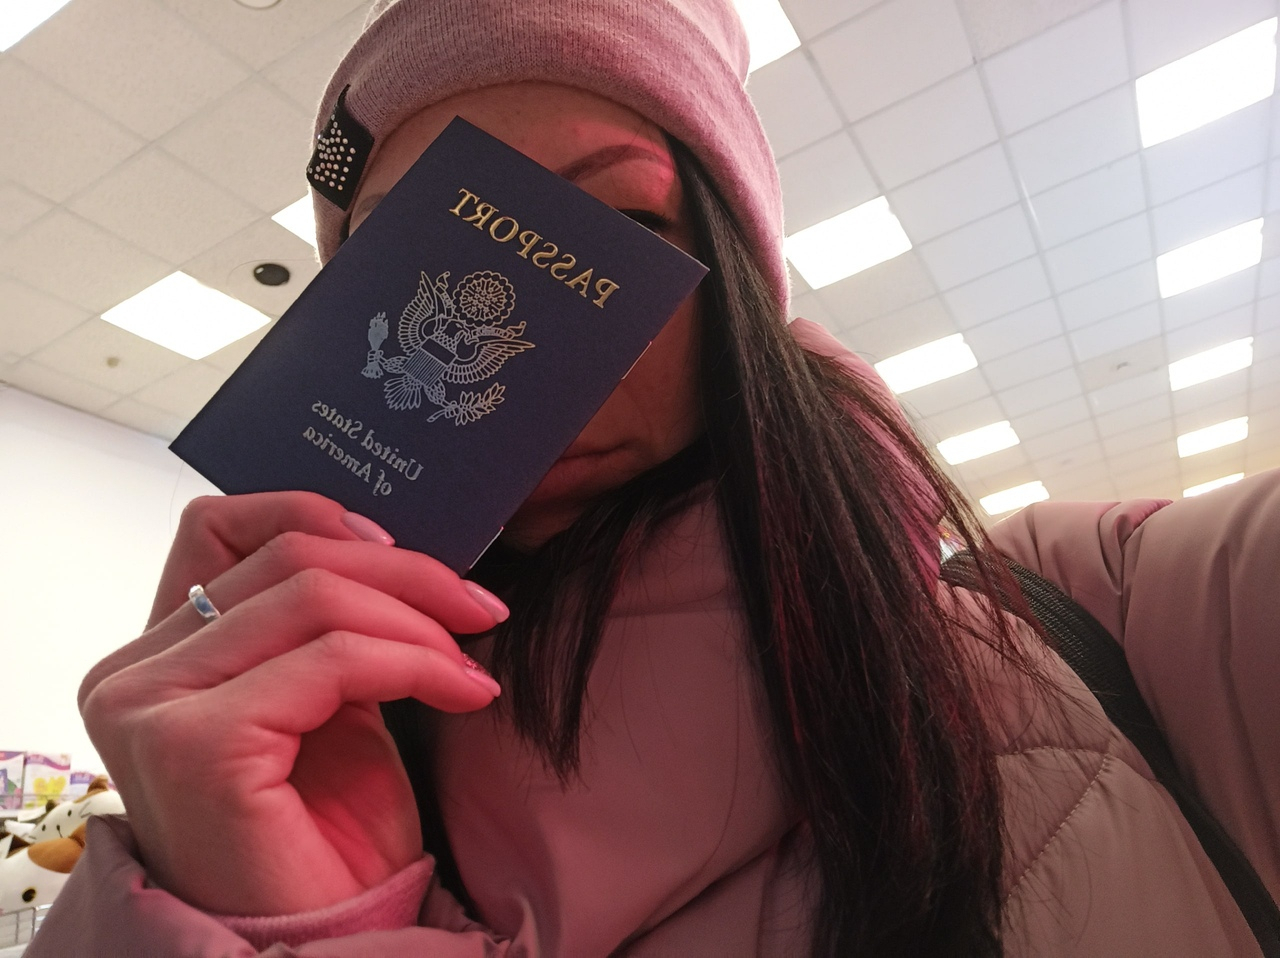 Депутат из Ярославля предложил ставить в паспорт штамп "предатель" отдыхающим в Турции